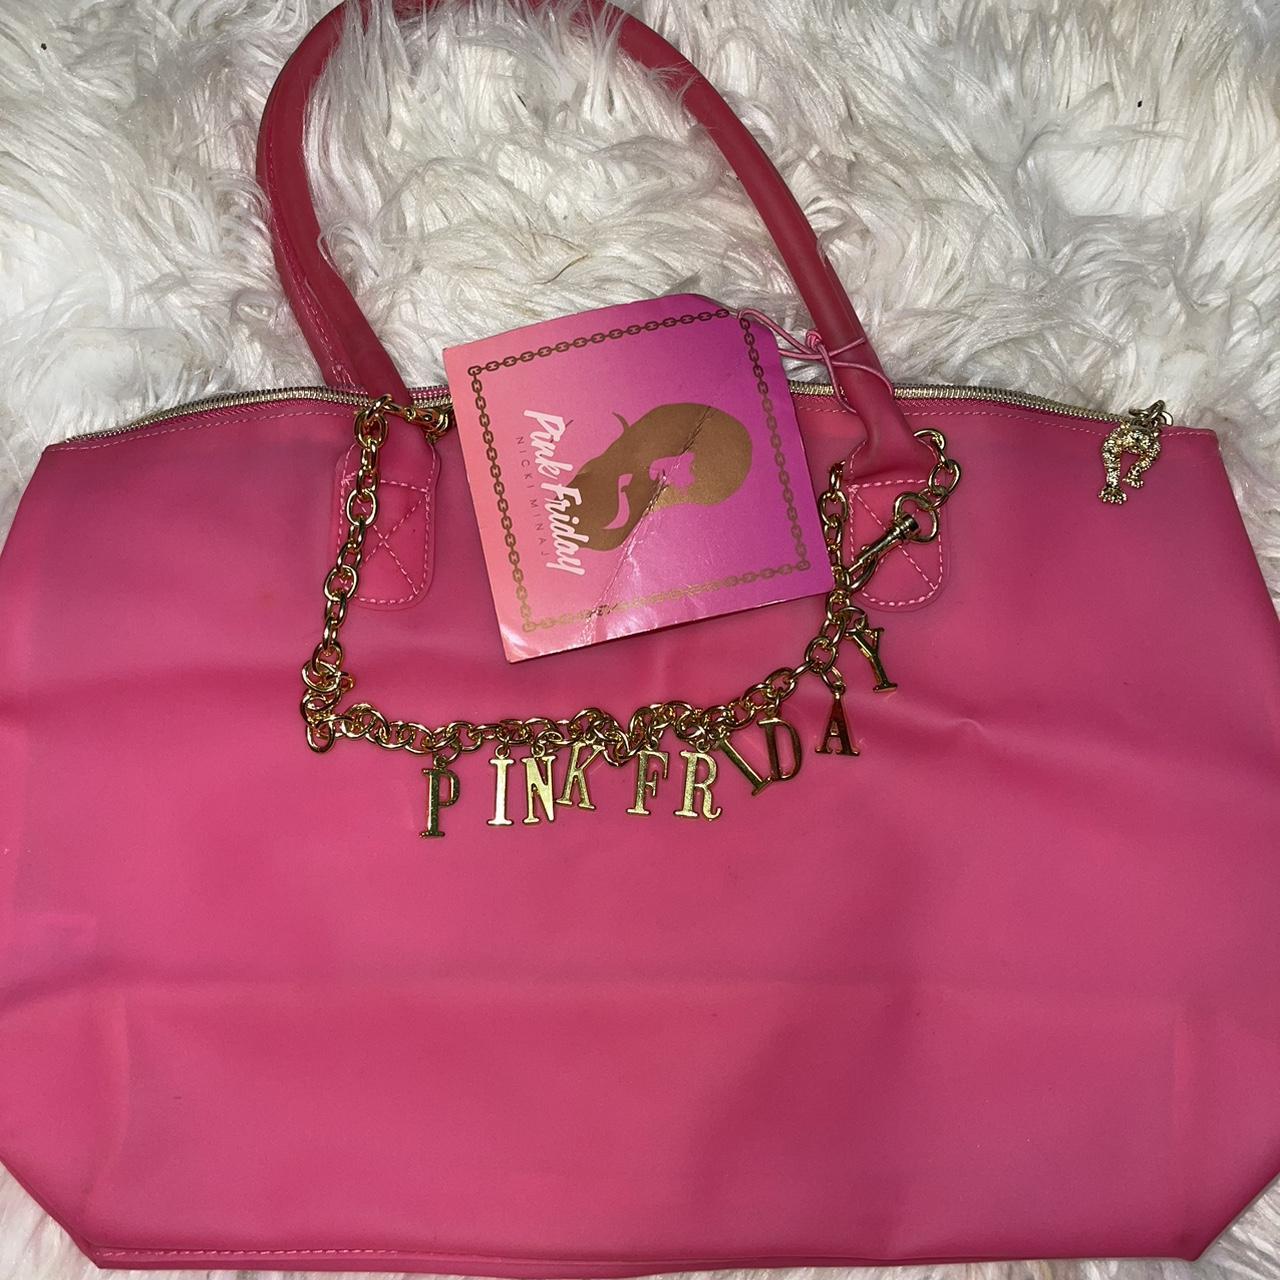 Nicki Minaj Pink Tote Bags